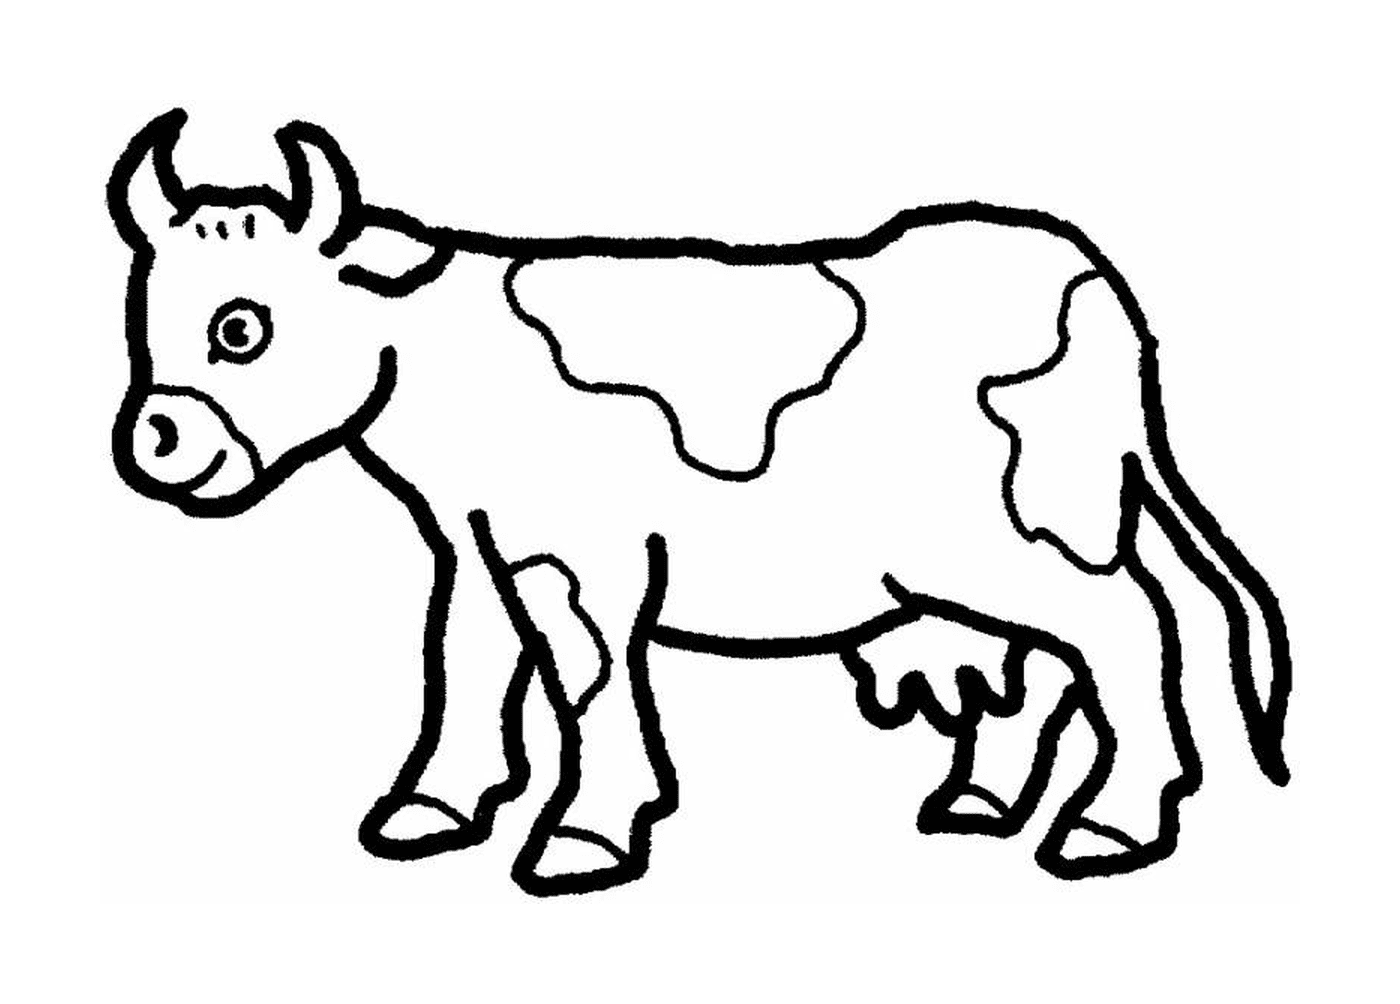   Une vache 